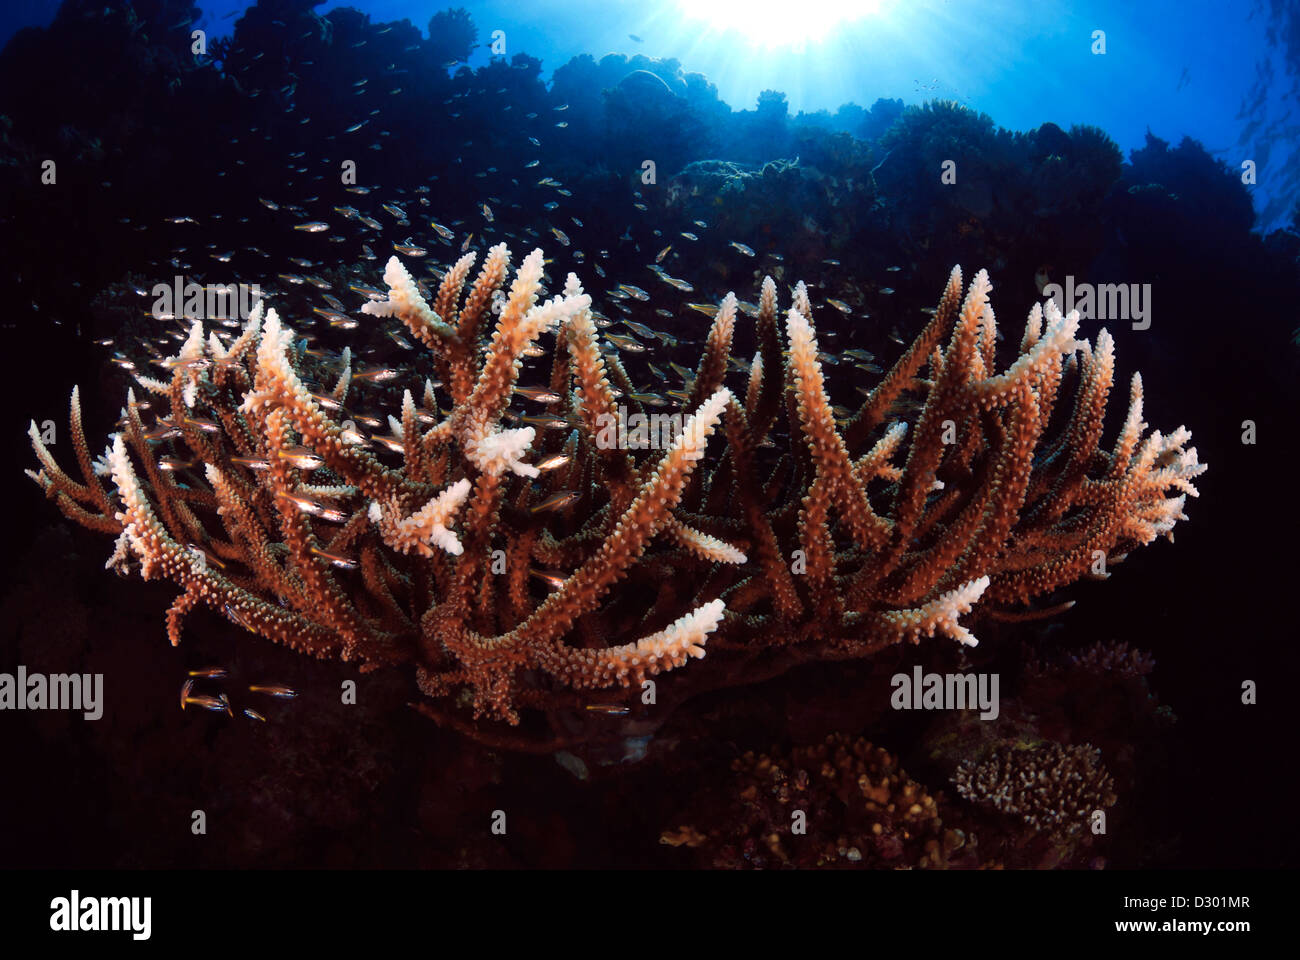 Corail Acropora Staghorn formosa avec poissons de récif, Grande Barrière de Corail, Mer de Corail, l'océan Pacifique, Queensland, Australie Banque D'Images